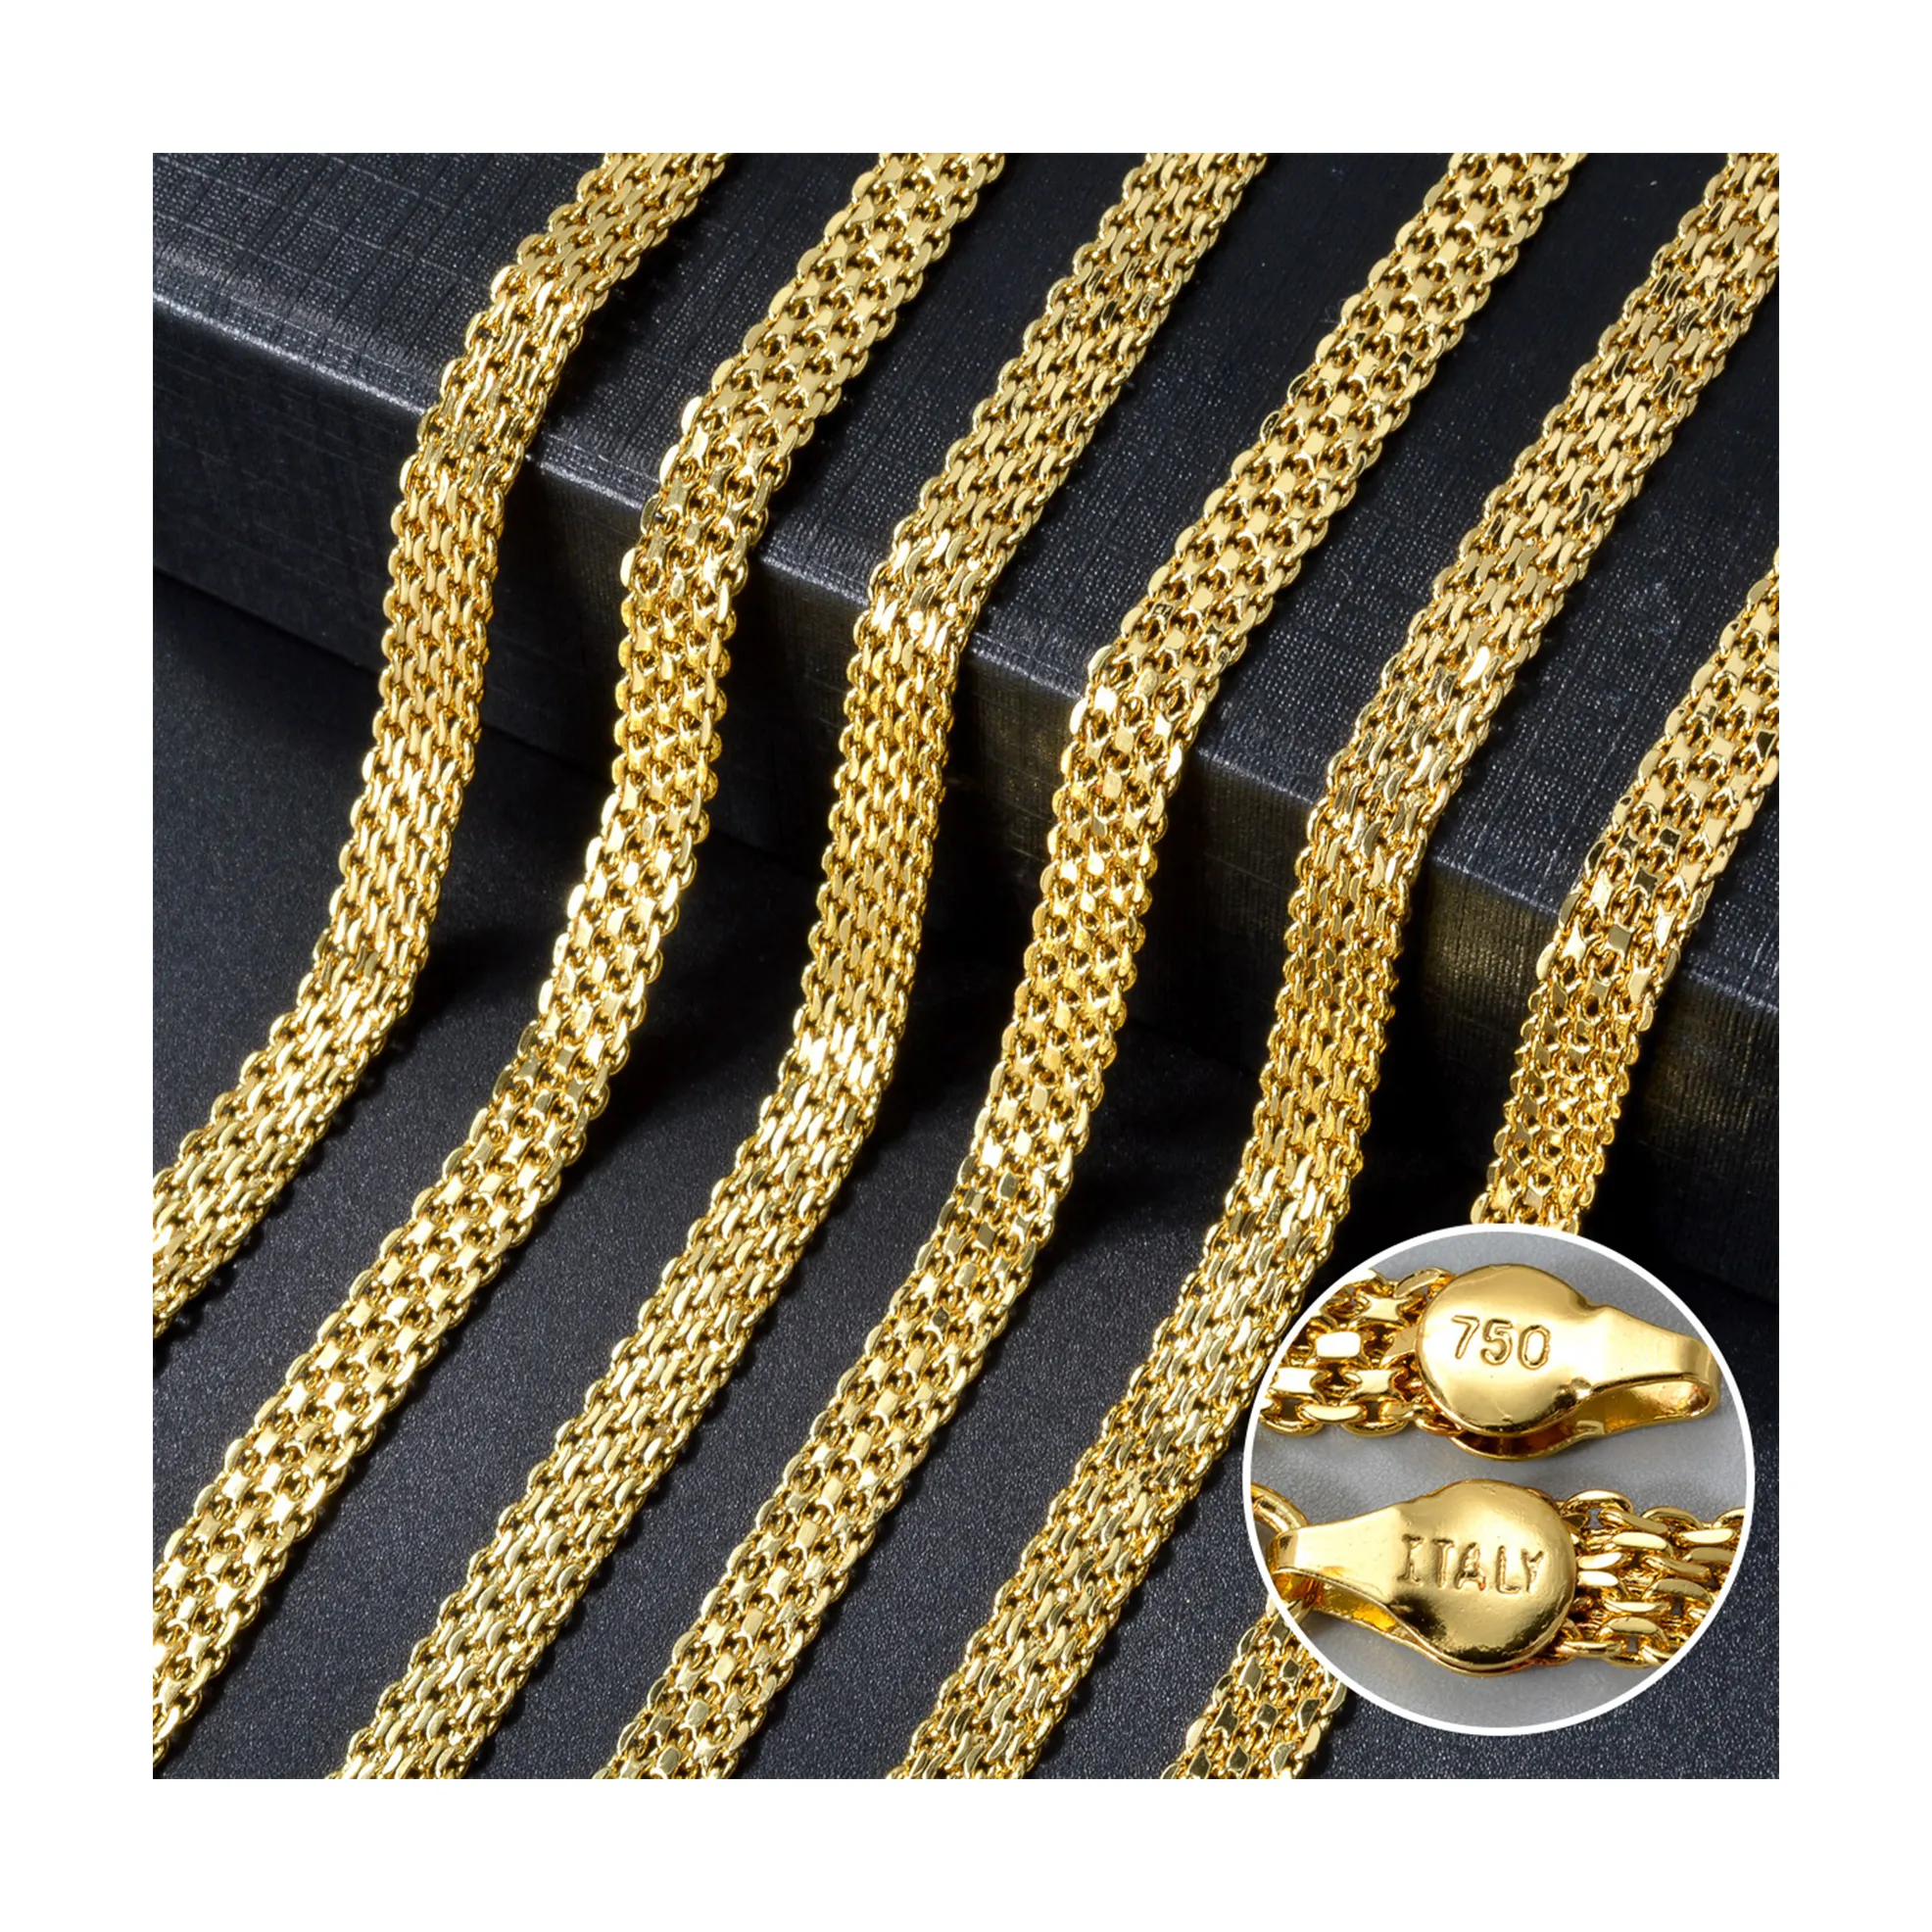 Ingrosso moda gioielli in ottone 14 k18k placcato oro italiano 750 uomini e donne collane